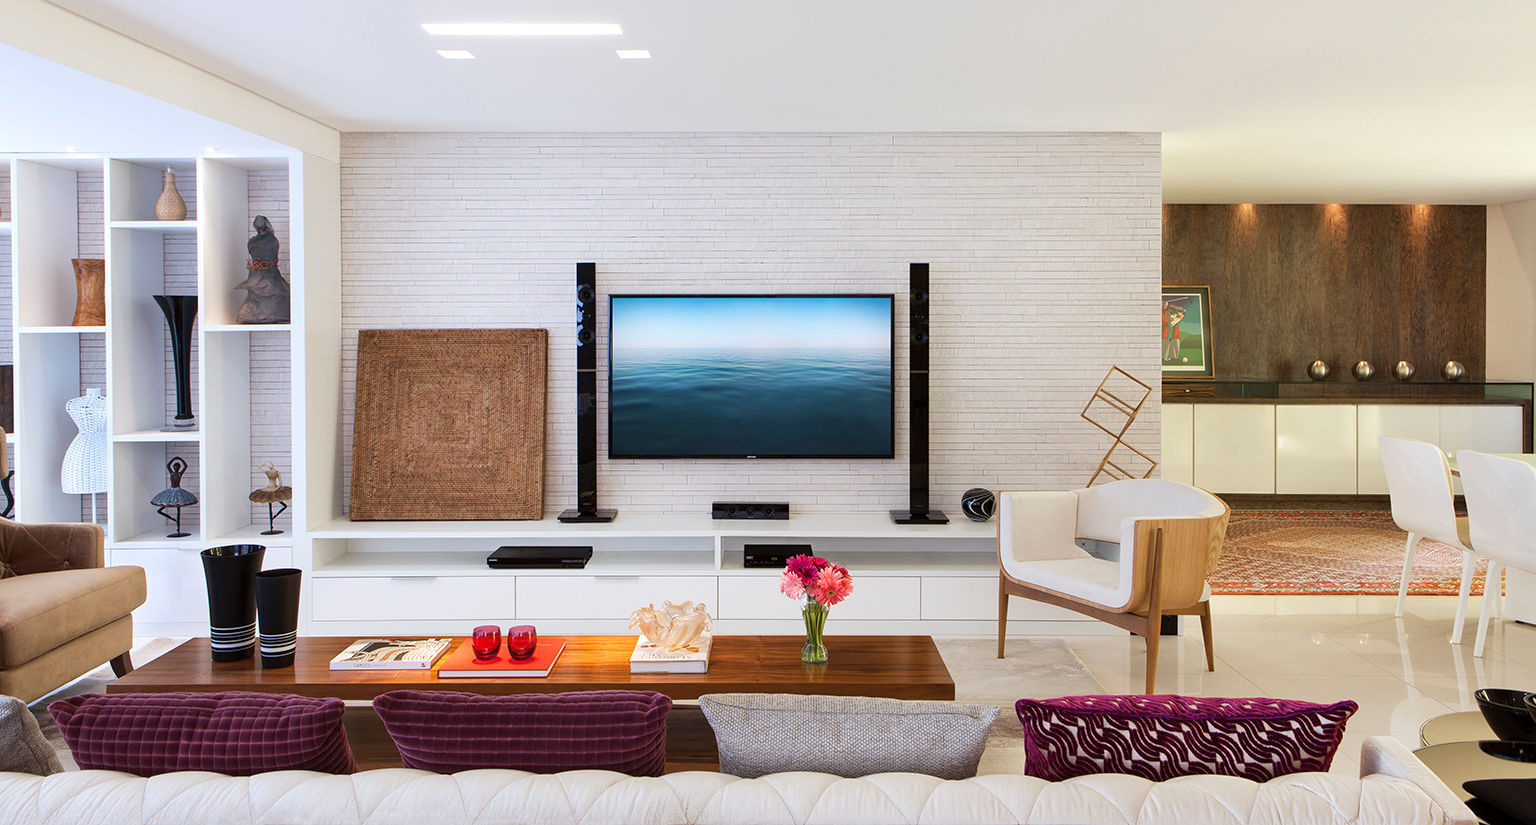 Apartamento 180m² em Boa Viagem, André Caricio Arquitetura André Caricio Arquitetura Living room TV stands & cabinets